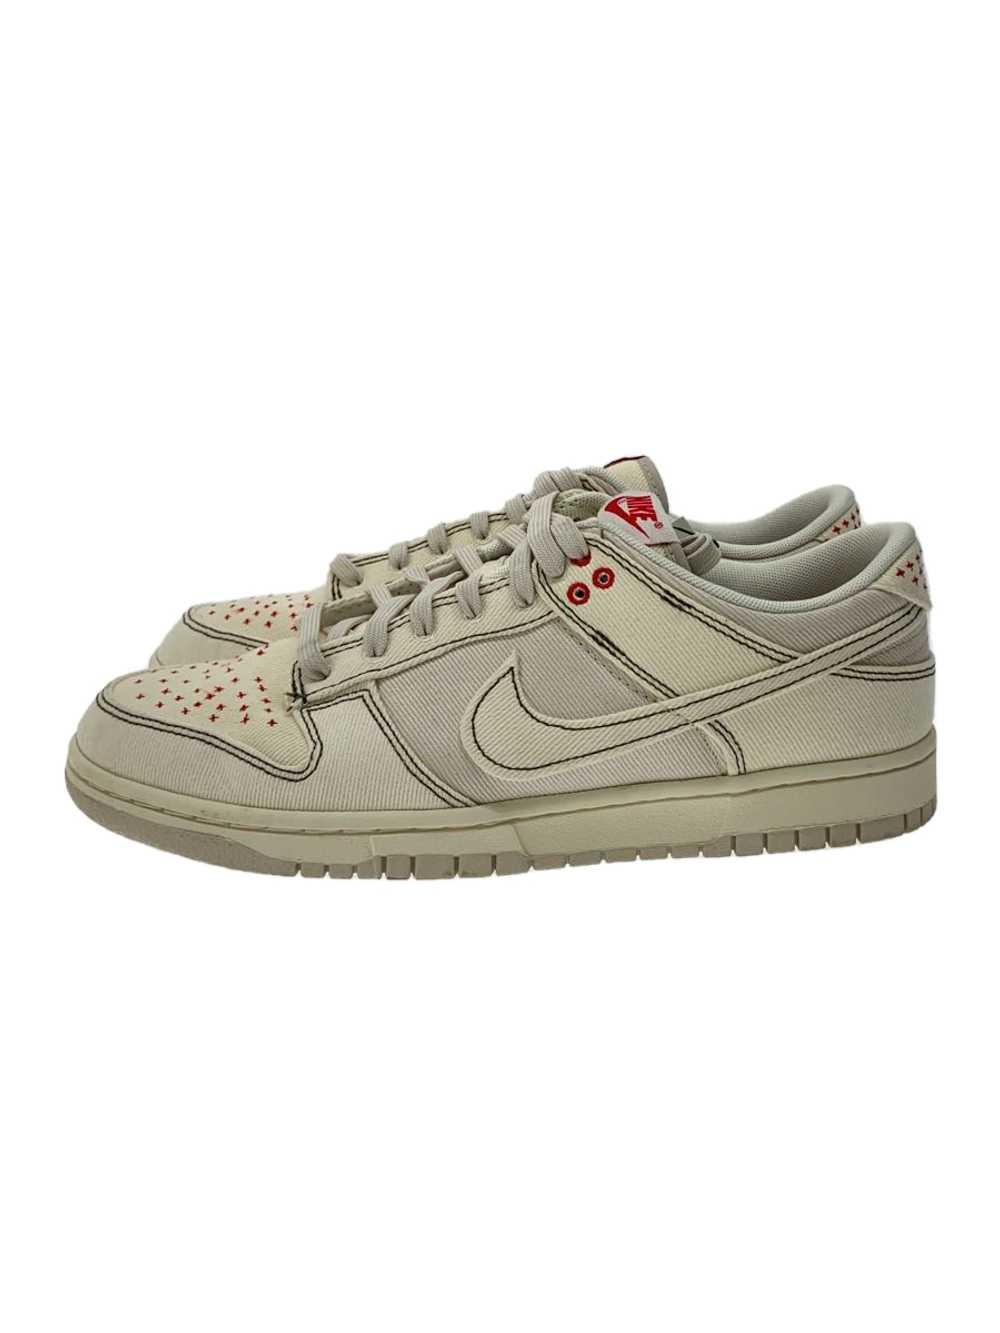 Nike Dunk Low Retro Se Se/White Shoes US10 J7L15 - image 1